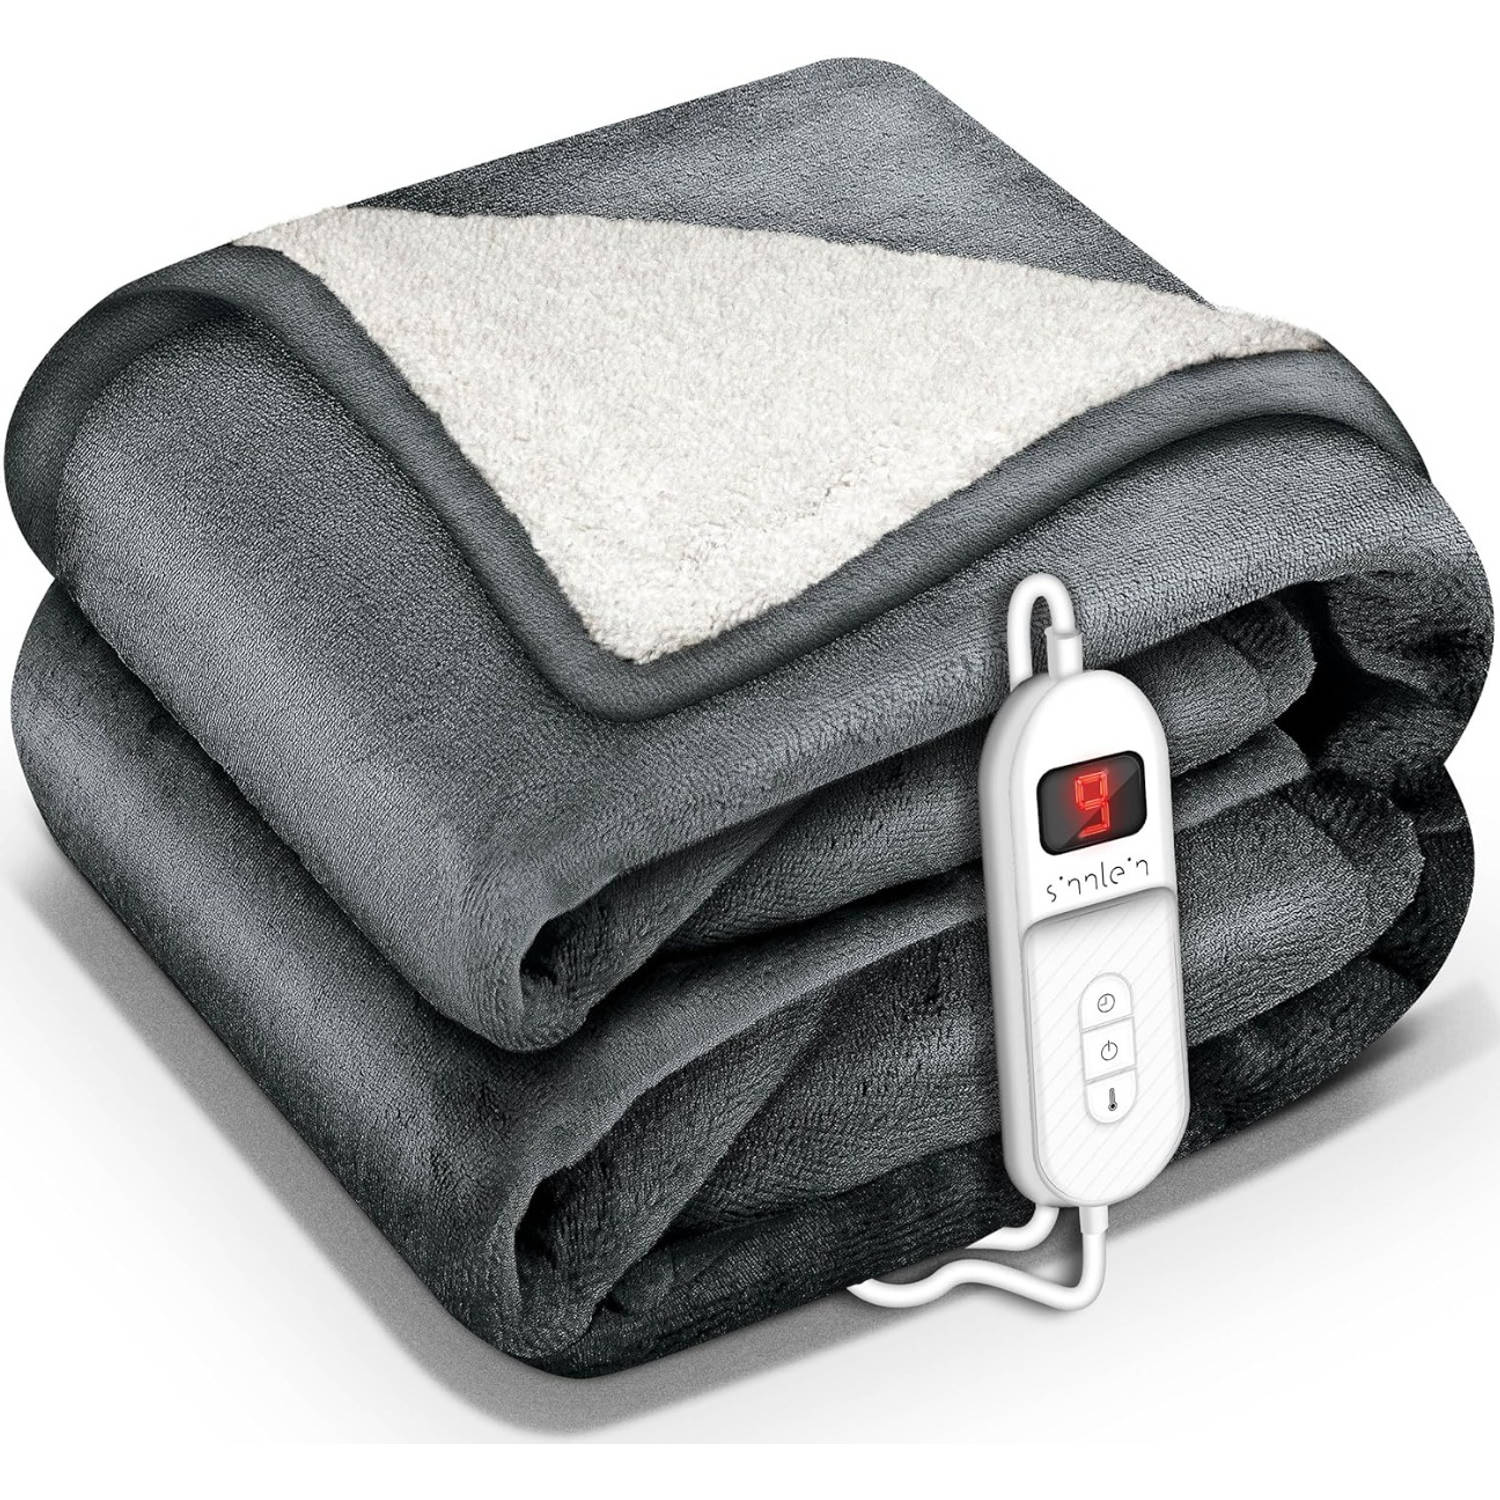 Sinnlein- Elektrische deken met automatische uitschakeling, donkergrijs, 200 x 180 cm, warmtedeken met 9 temperatuurn...